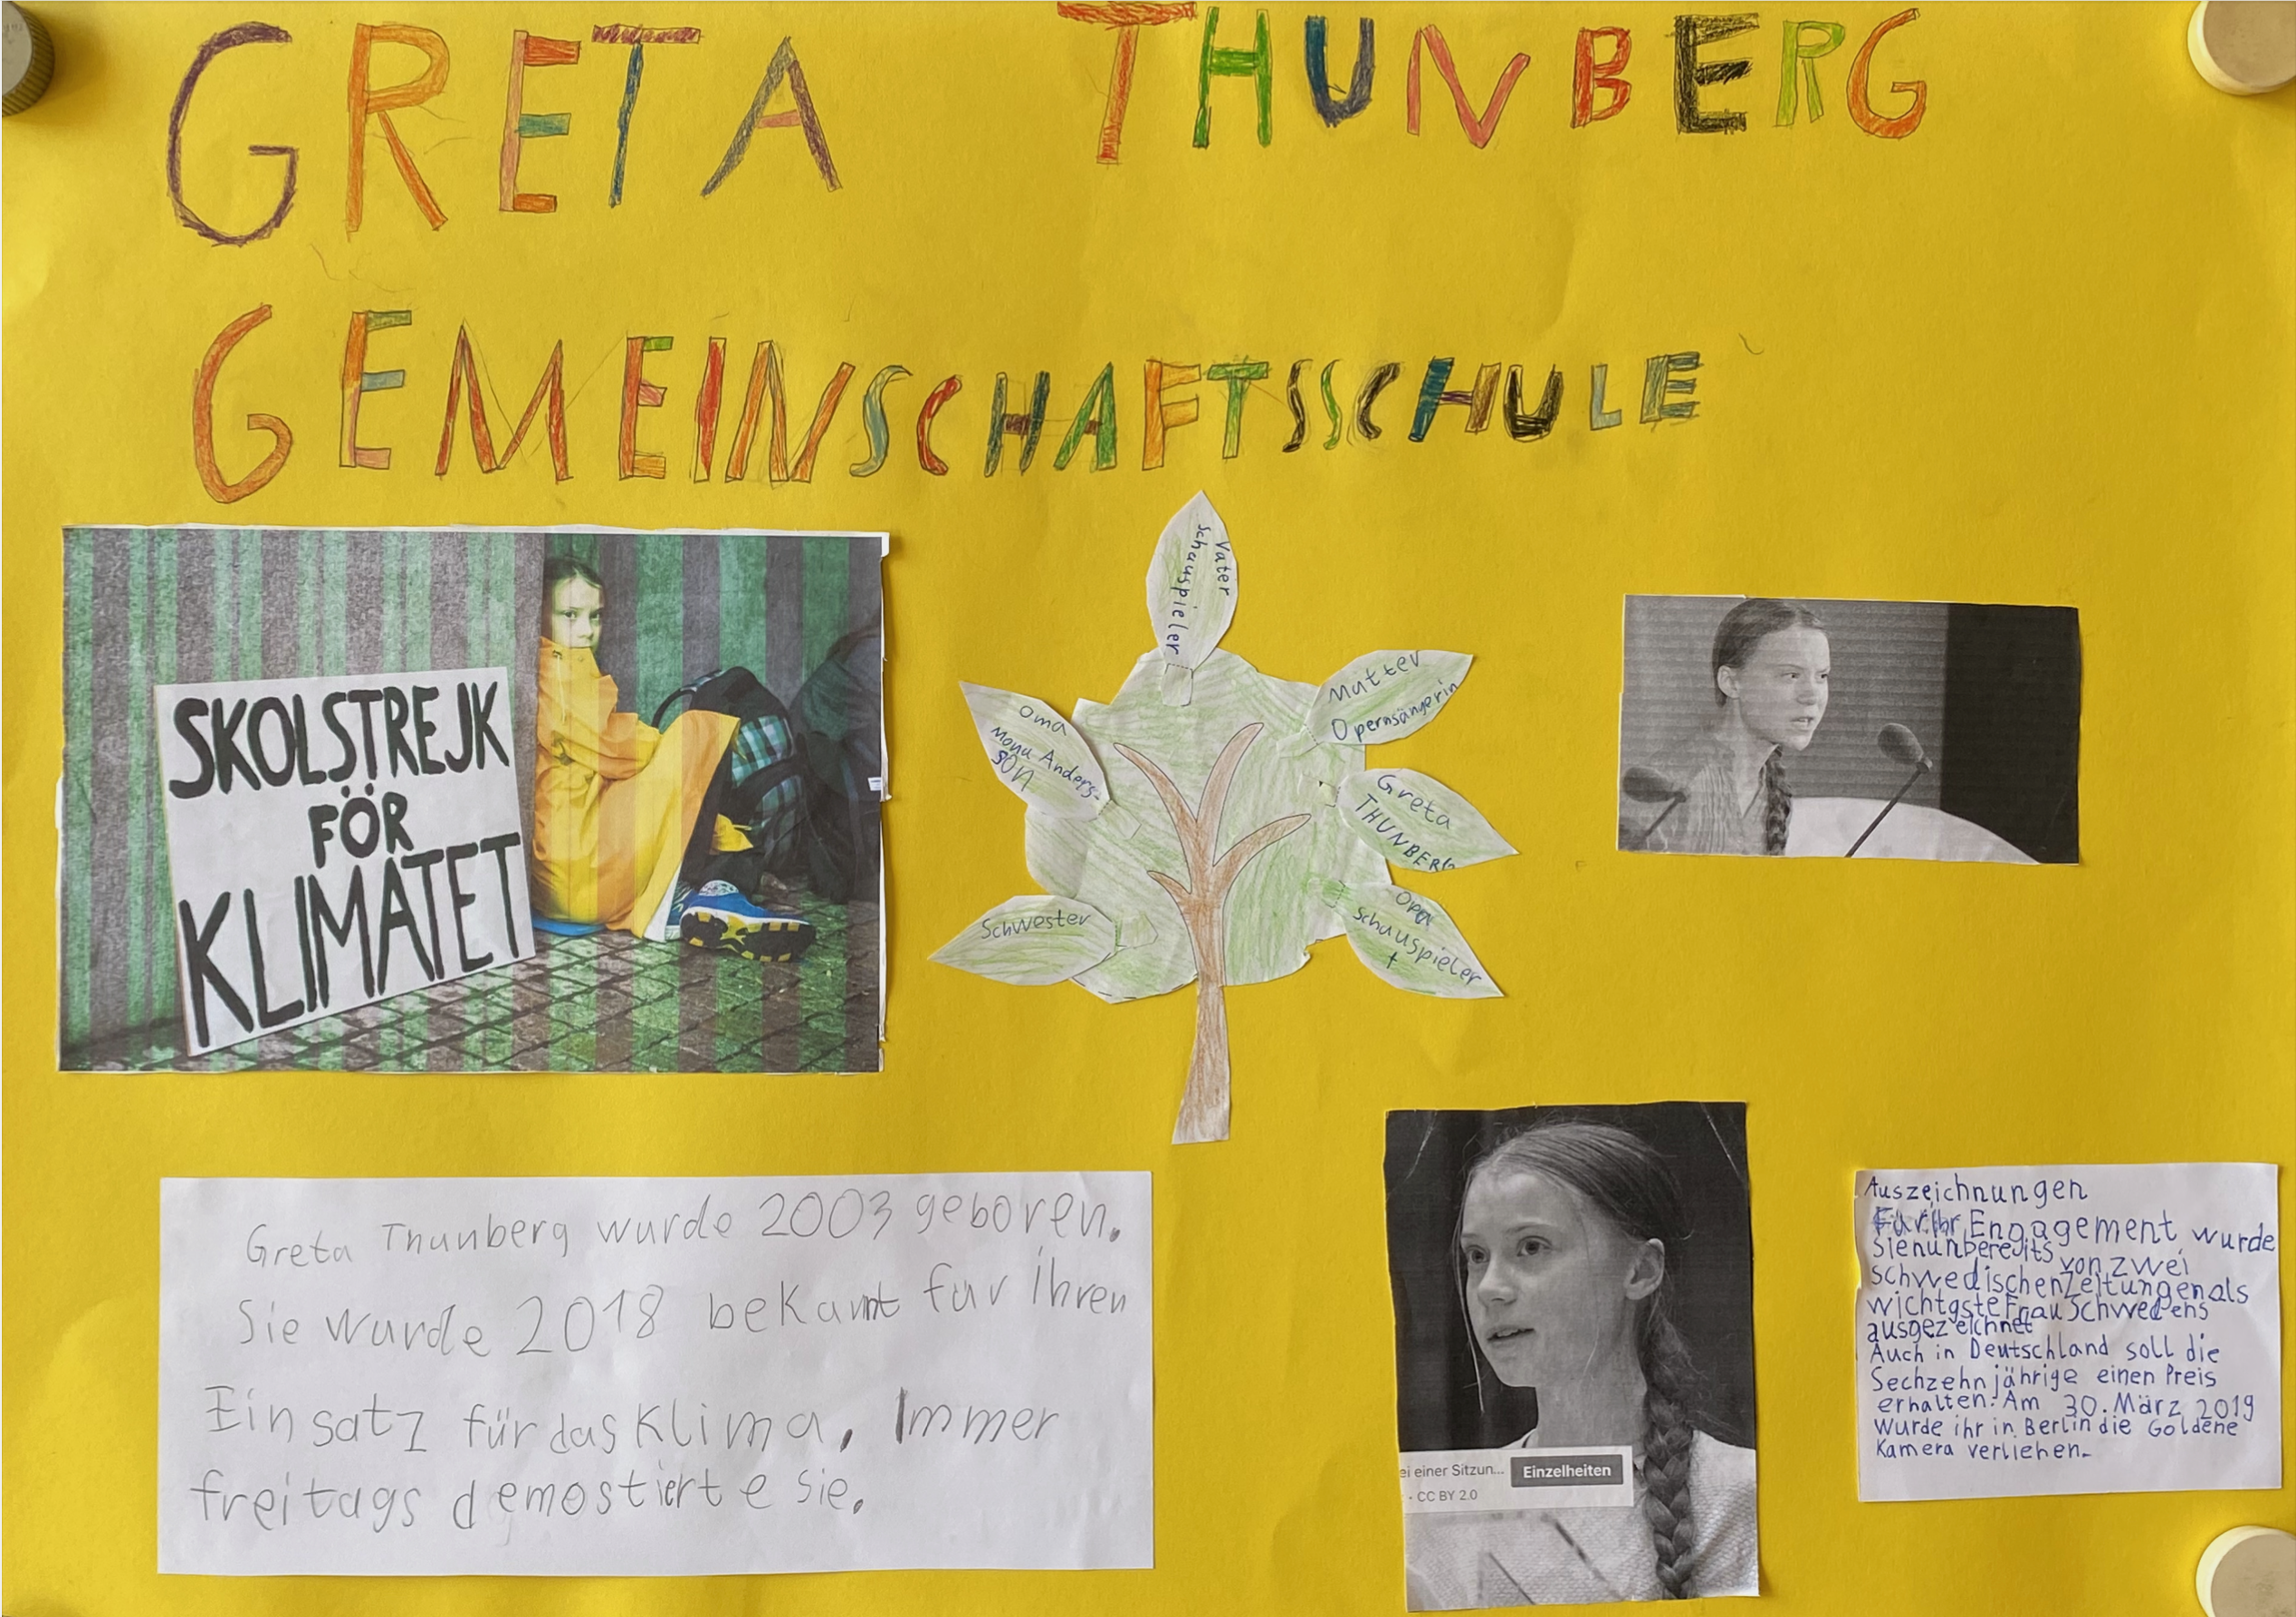 Greta-Thunberg-Gemeinschaftsschule-3a-